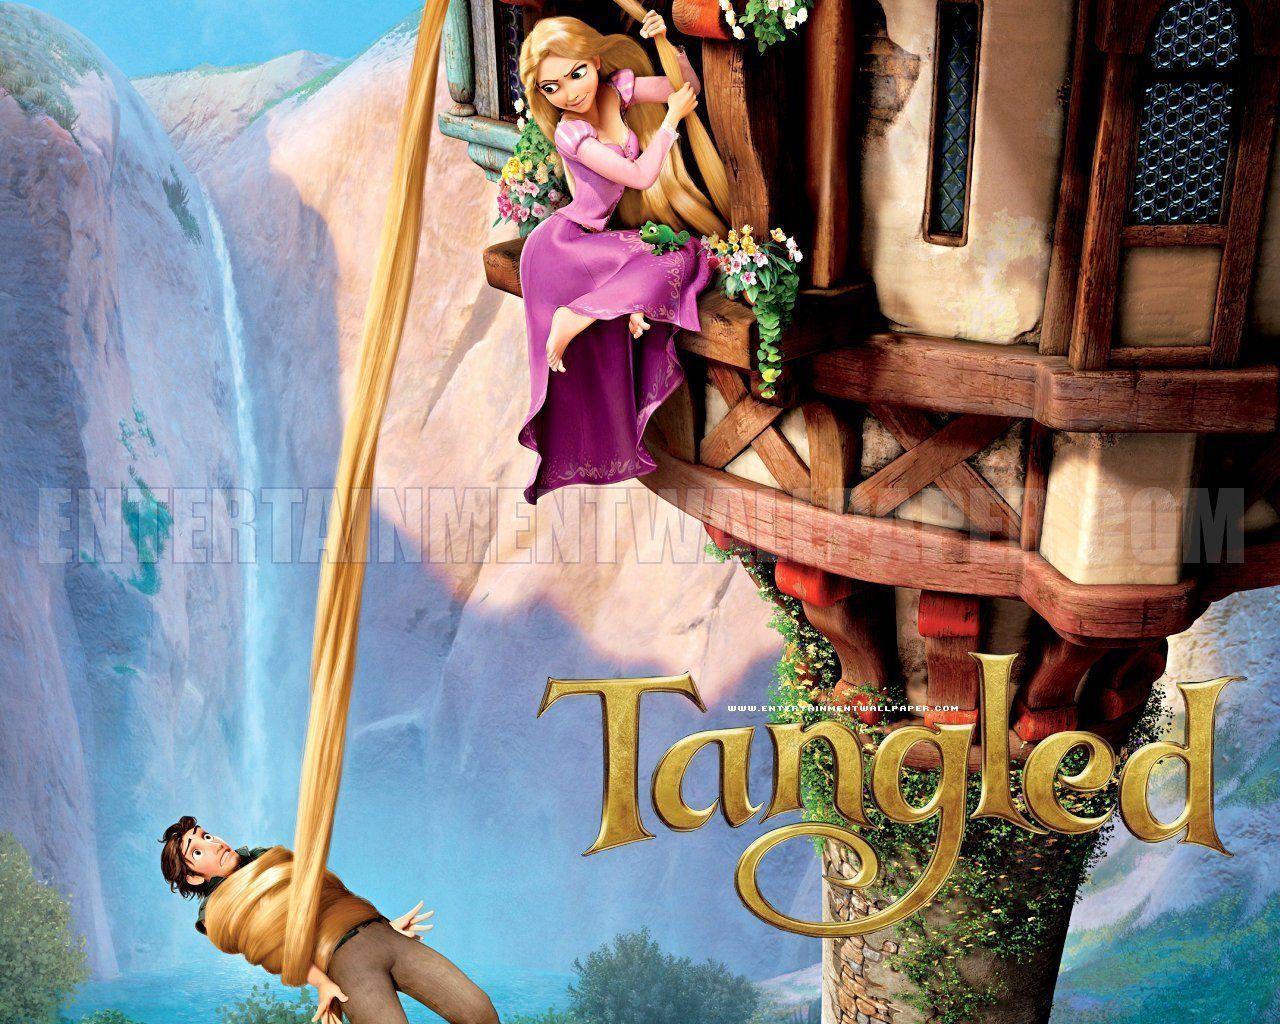 Tangled Disney Wallpaper Rapunzel from Tangled